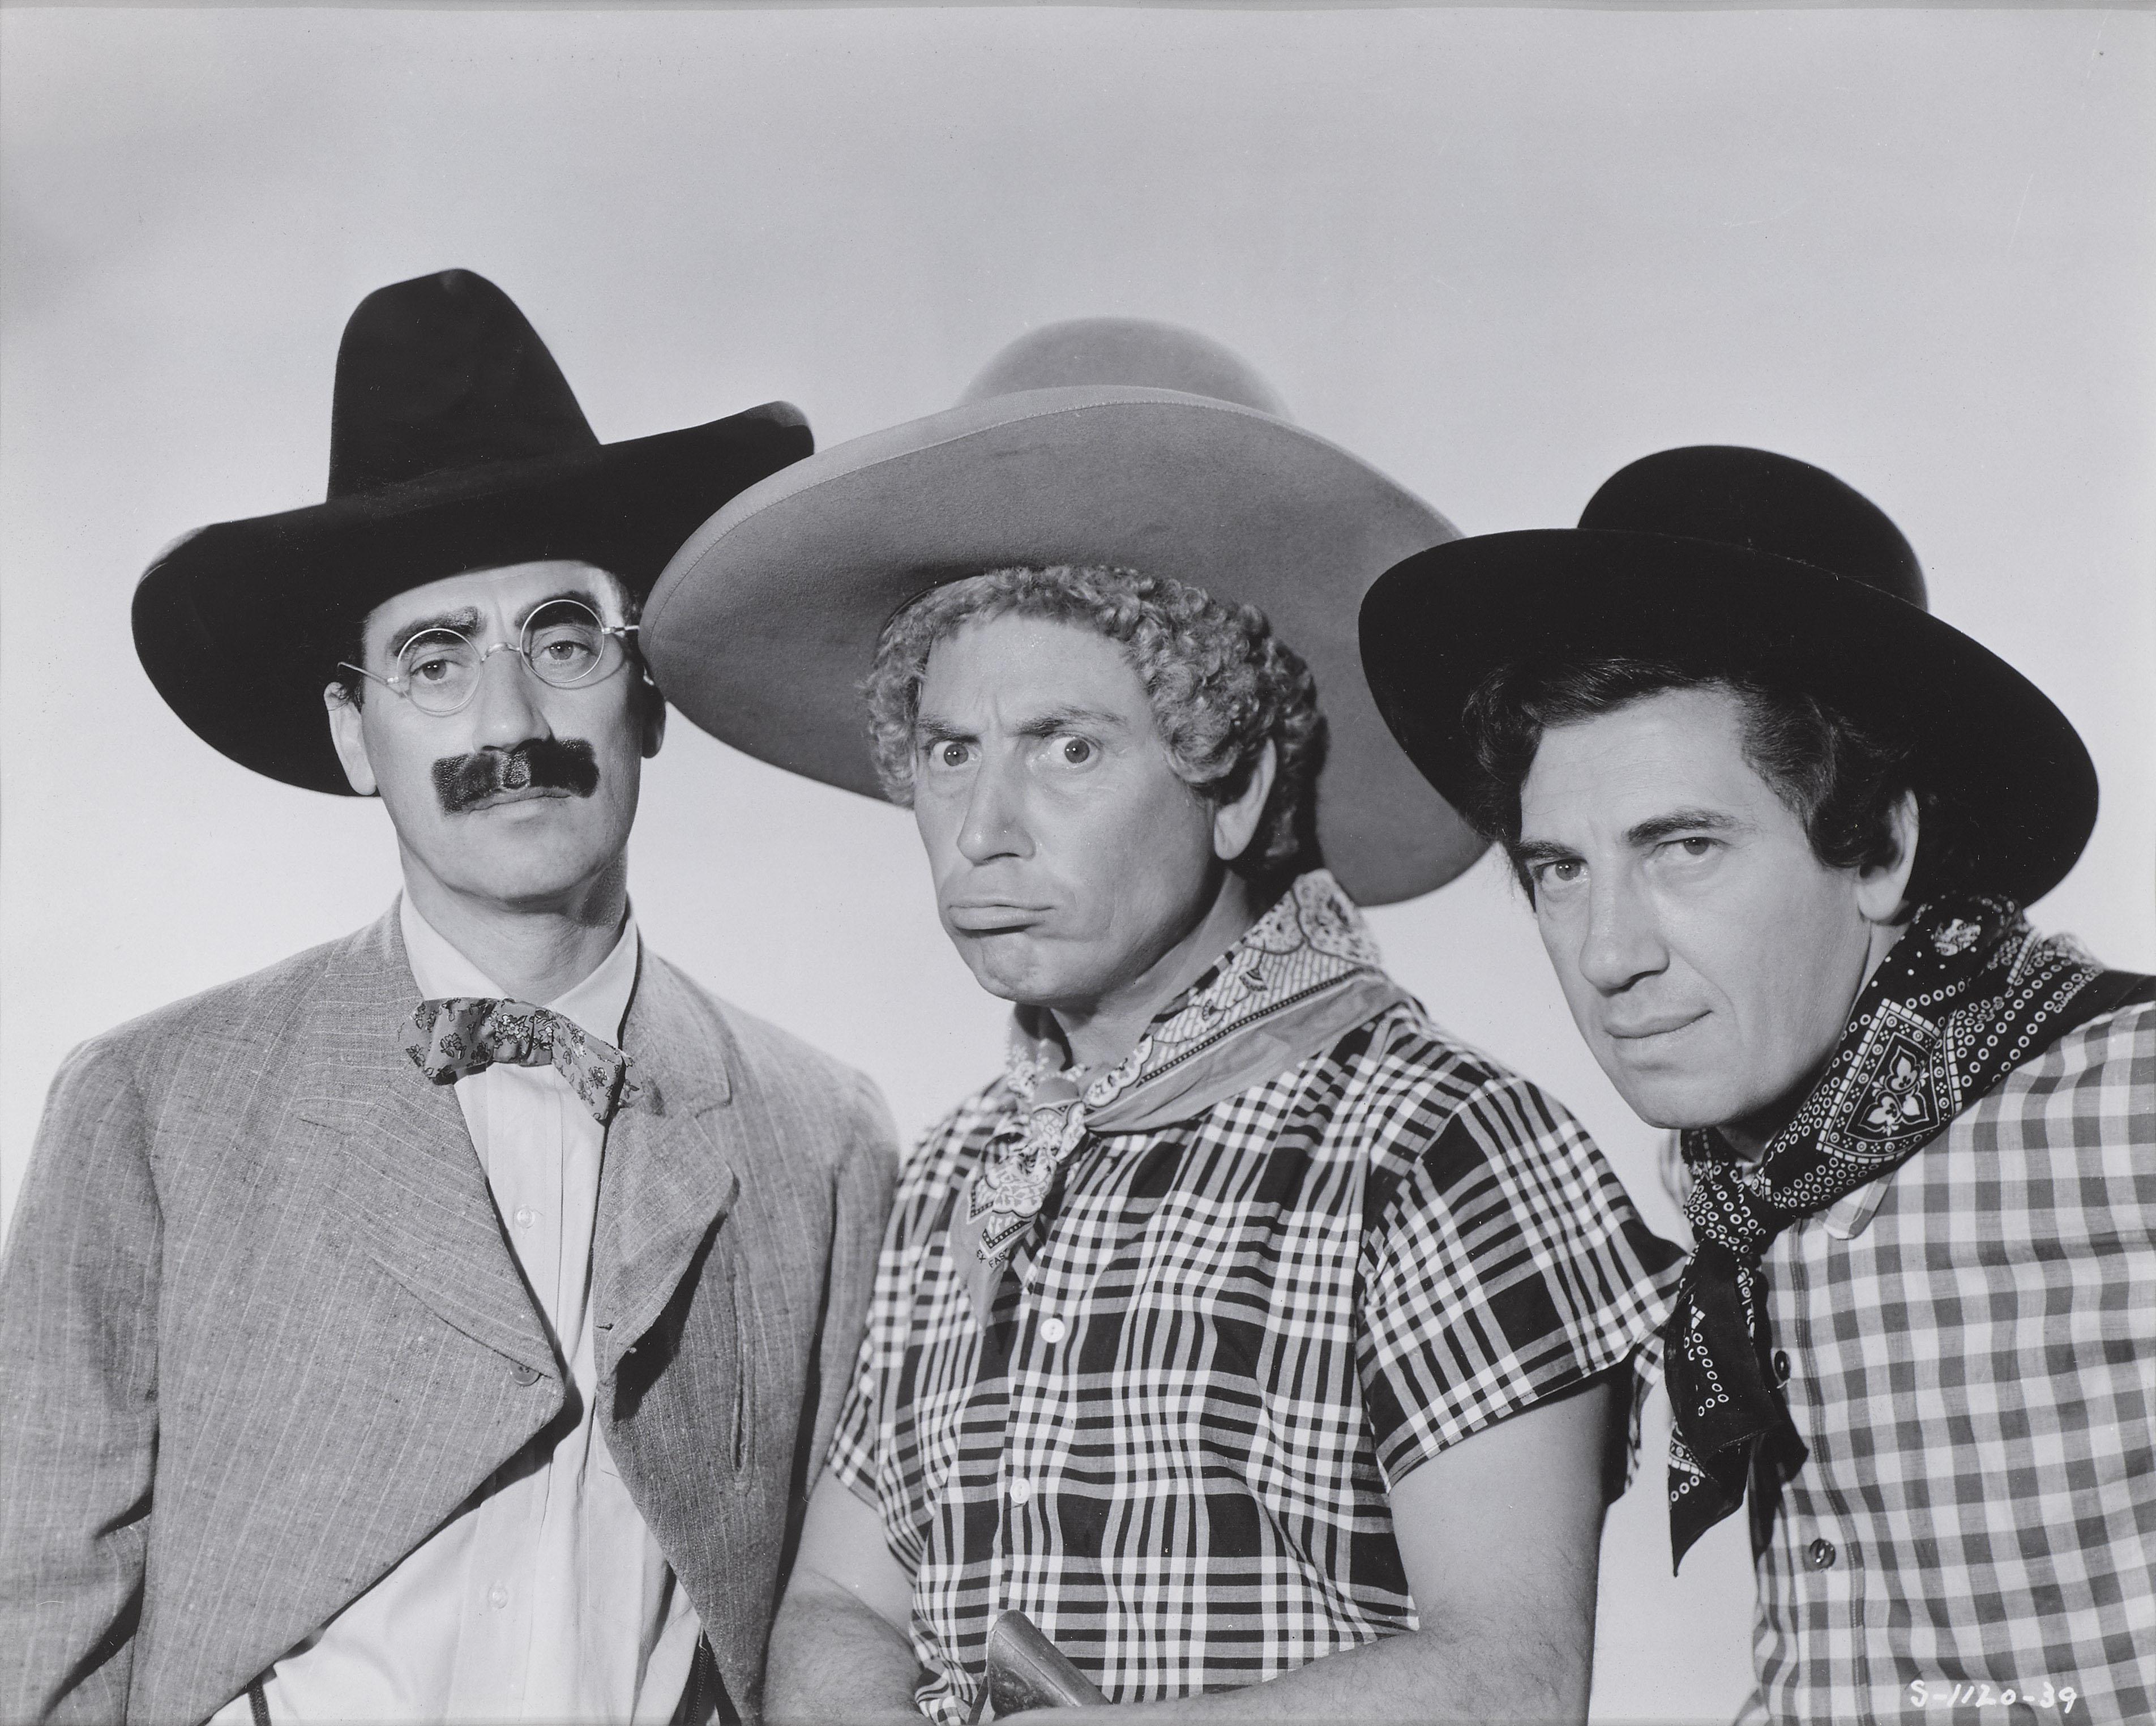 Image originale de la comédie américaine Go West, réalisée par Edward Buzzell, avec Groucho Marx, Chico Marx et Harpo Marx.
Cette pièce est encadrée dans un cadre en bois d'Obeche avec un montage sur carte sans acide et un plexiglas UV. 
Cette pièce